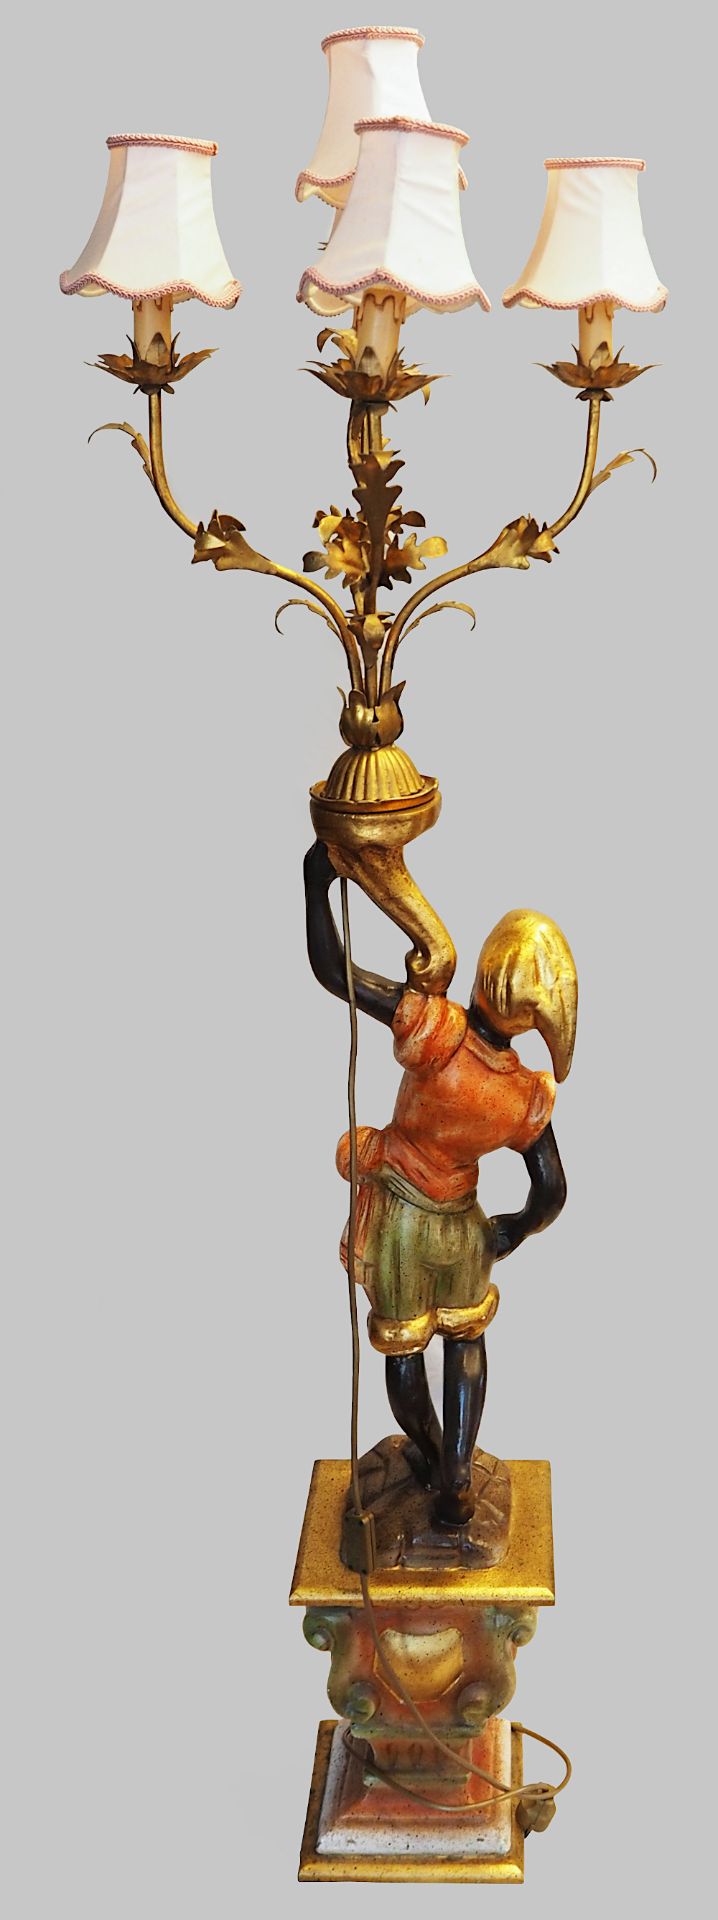 1 Stehlampe „Mohr mit phrygischer Mütze“ Holz farbig gefasst z.T. vergoldet, 20. Jh. - Image 2 of 2